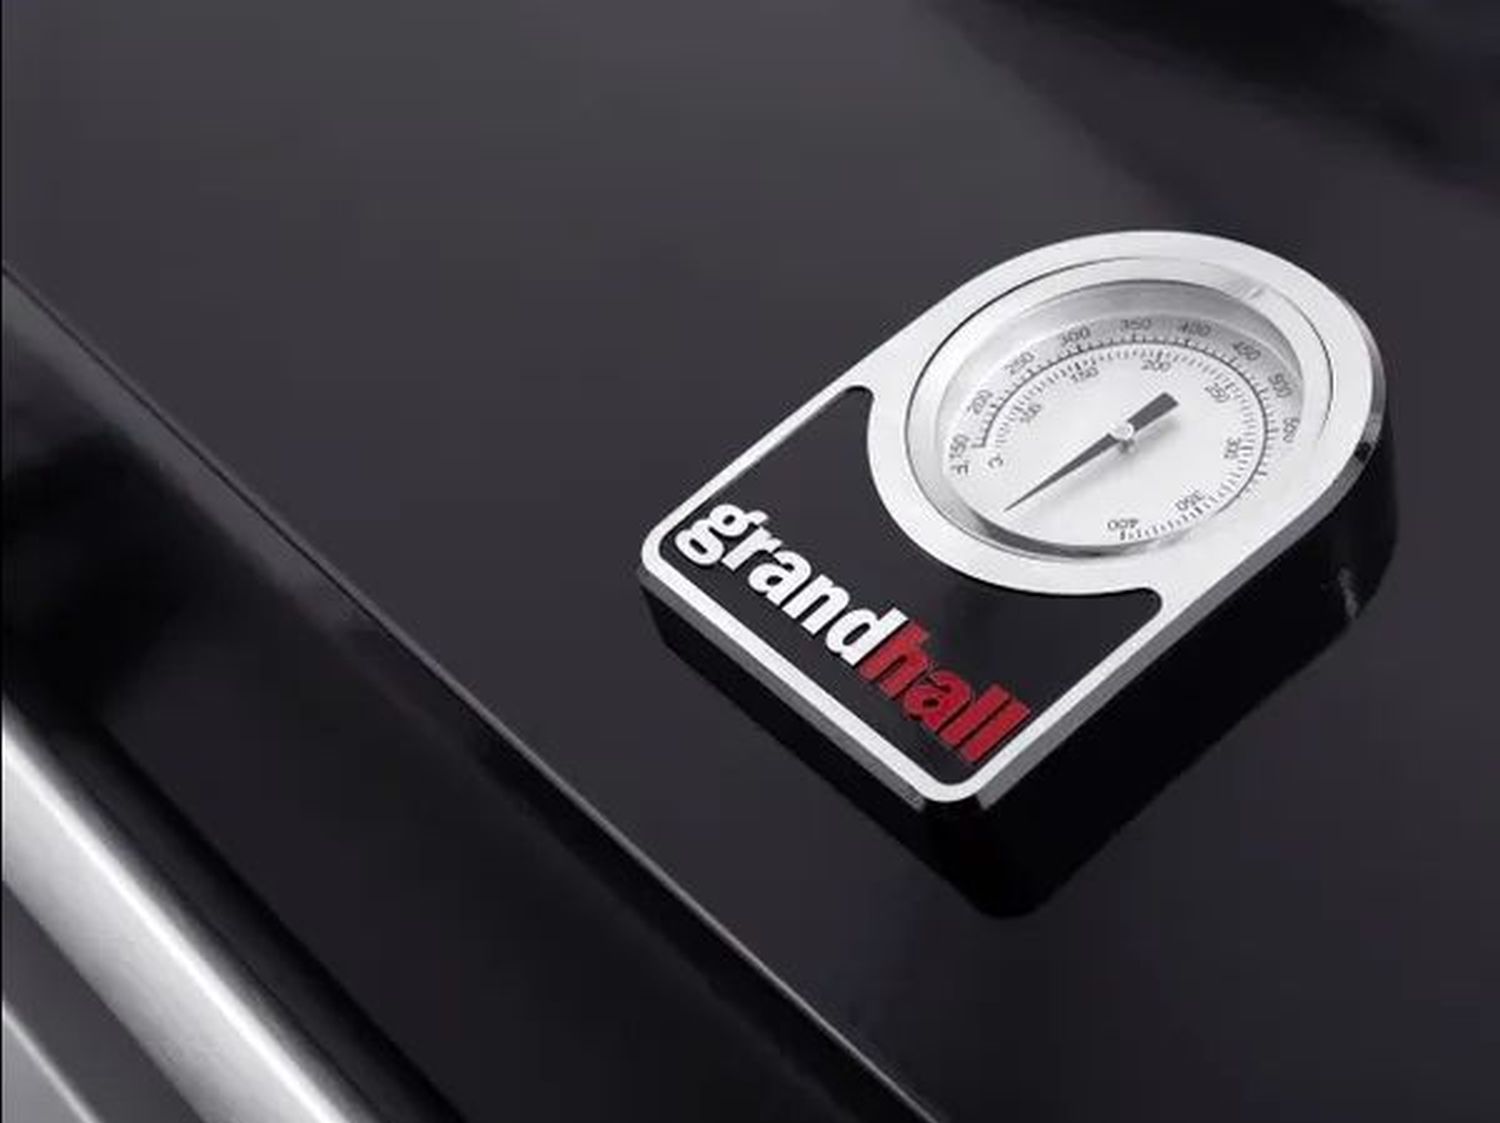 Grandhall Gasgrill Premium G4 Built in | Einbaugrill in edlem Design und hochwertiger Oberfläche in schwarz